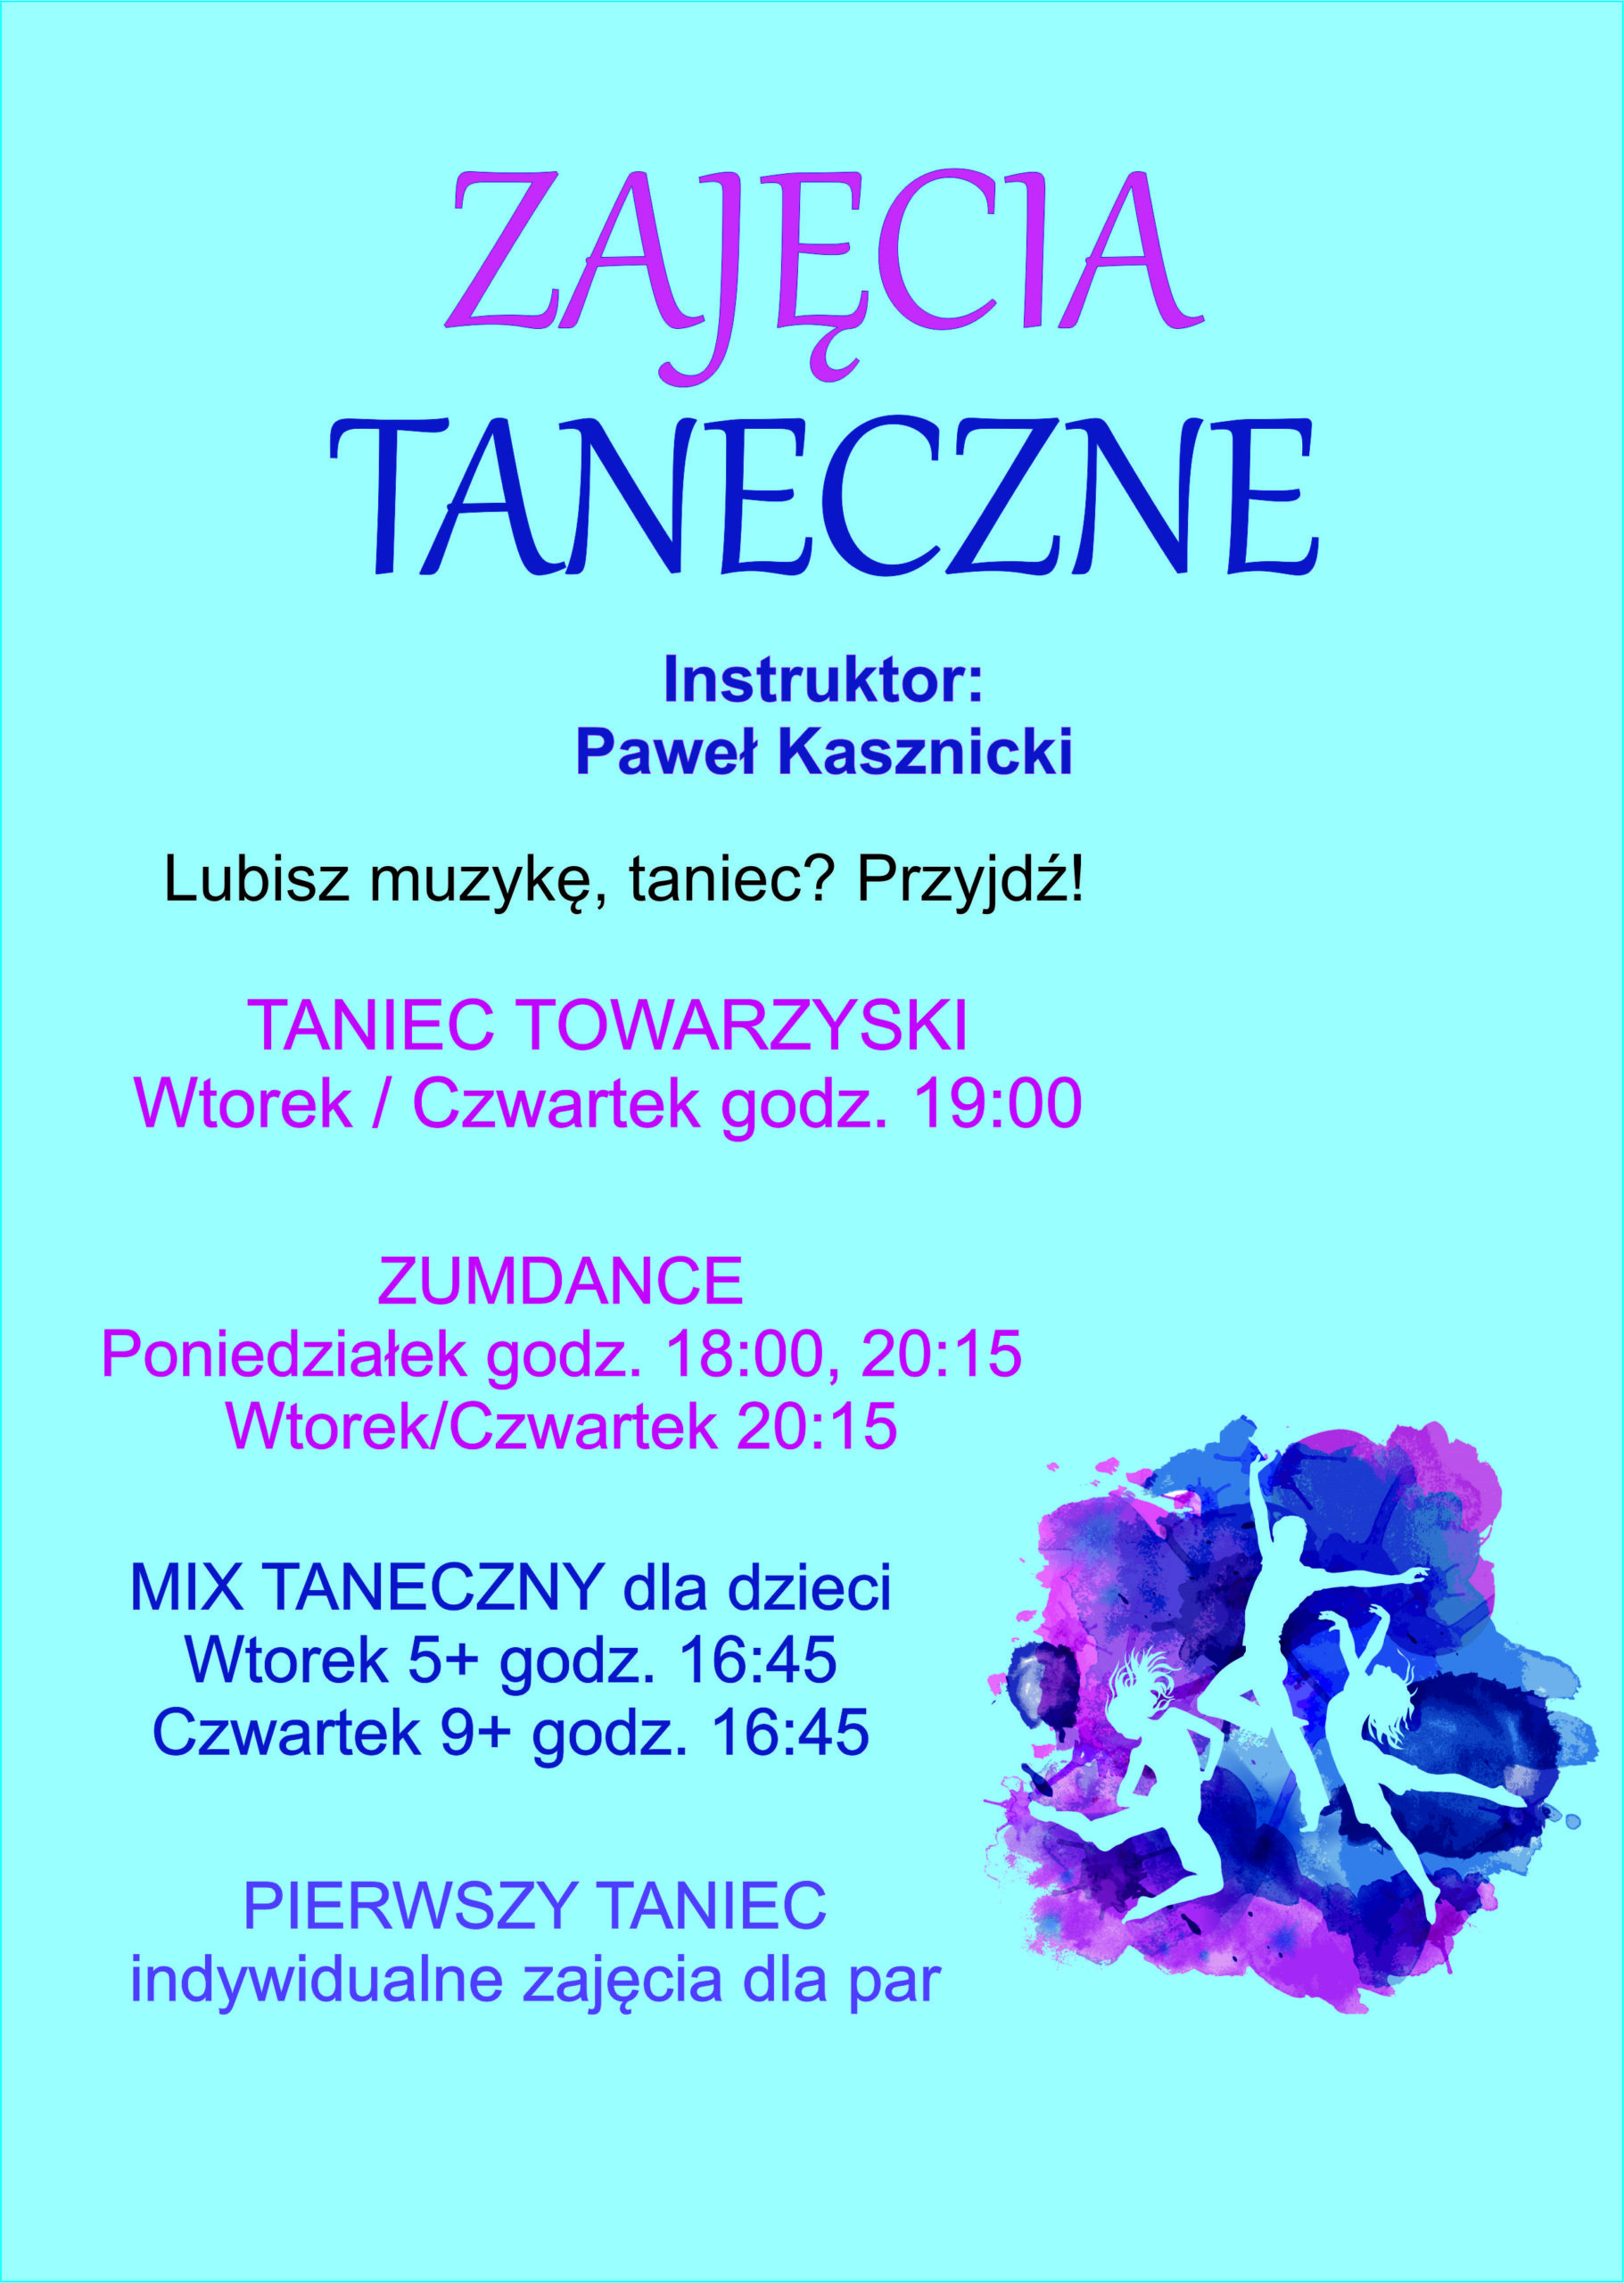 GDKzB w Ksawerowie zaprasza na zajęcia taneczne prowadzone przez Pawła Kasznickiego. ZumDance, Mix taneczny dla dzieci, pierwszy taniec